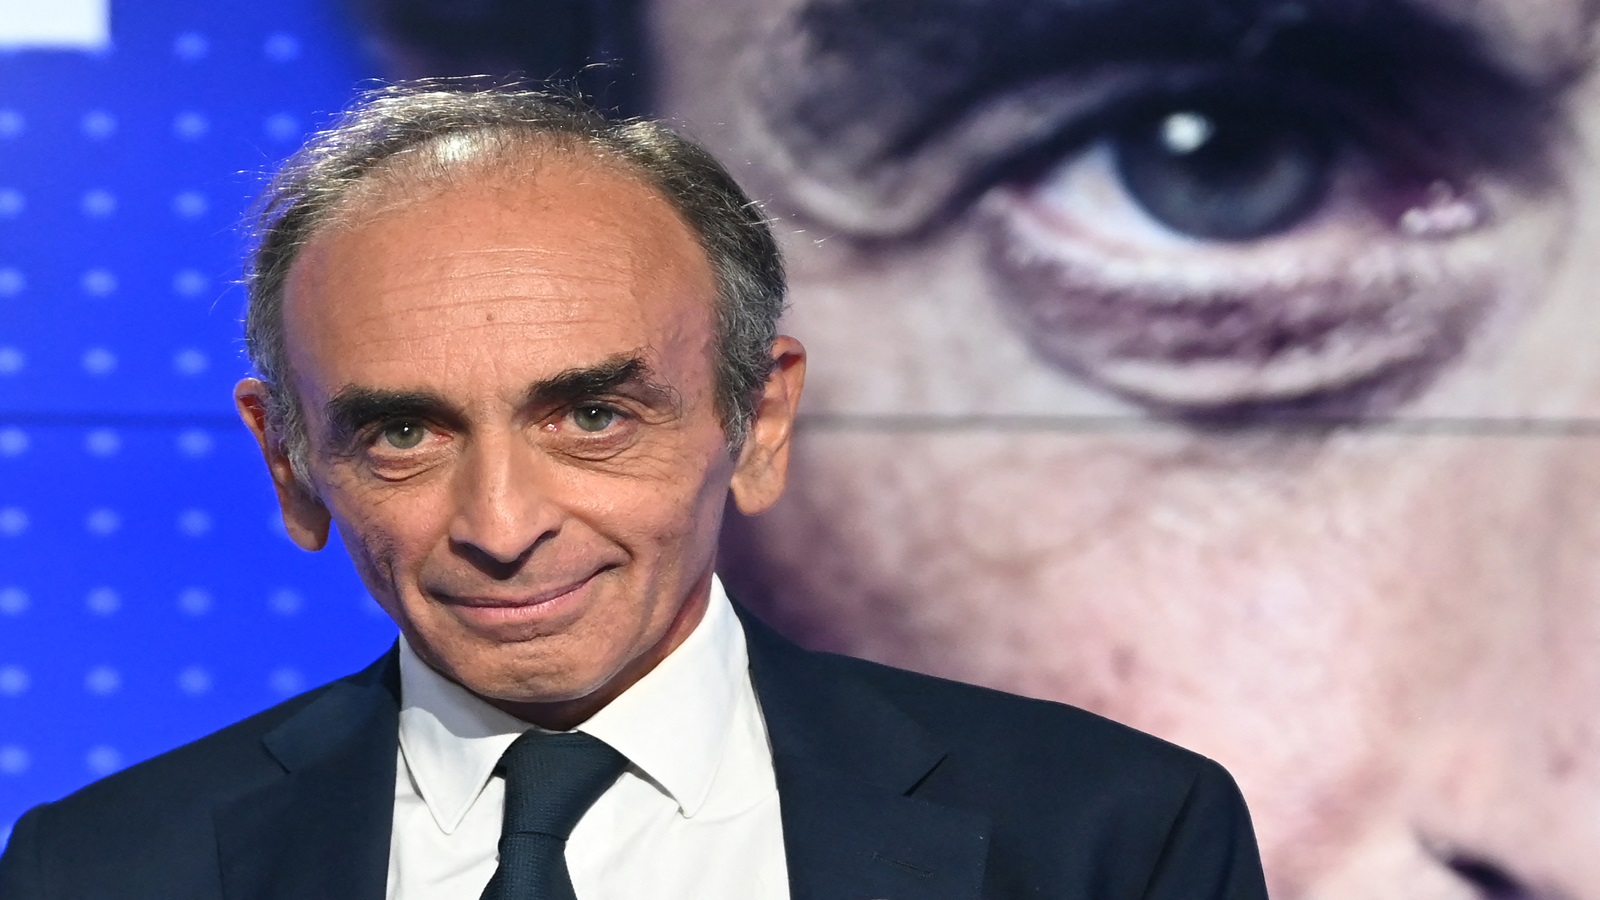 مرشح رئاسي فرنسي يتخوف من "لبننة فرنسا"